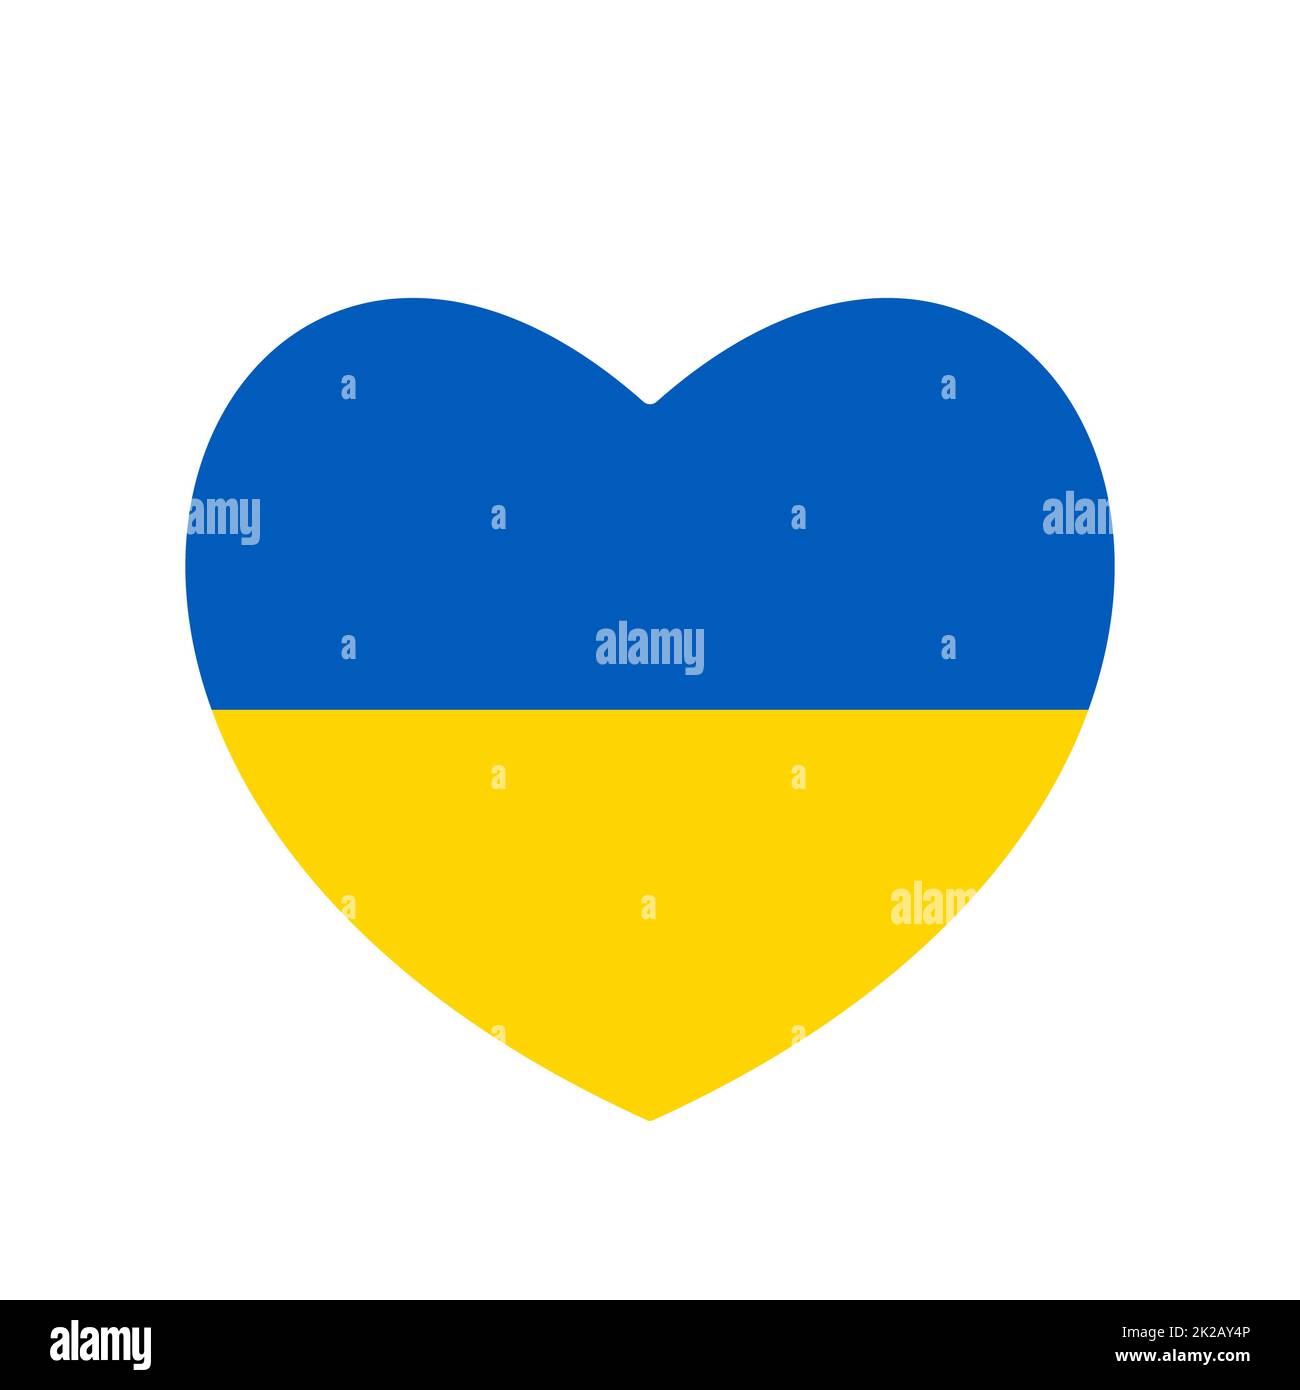 Ein ukrainisches Flaggensymbol in Form eines Herzens. Abstrakte patriotische ukrainische Flagge mit Liebessymbol. Blaue und gelbe konzeptionelle Idee - mit der Ukraine im Herzen. Unterstützung des Landes während der Besatzung. Stockfoto